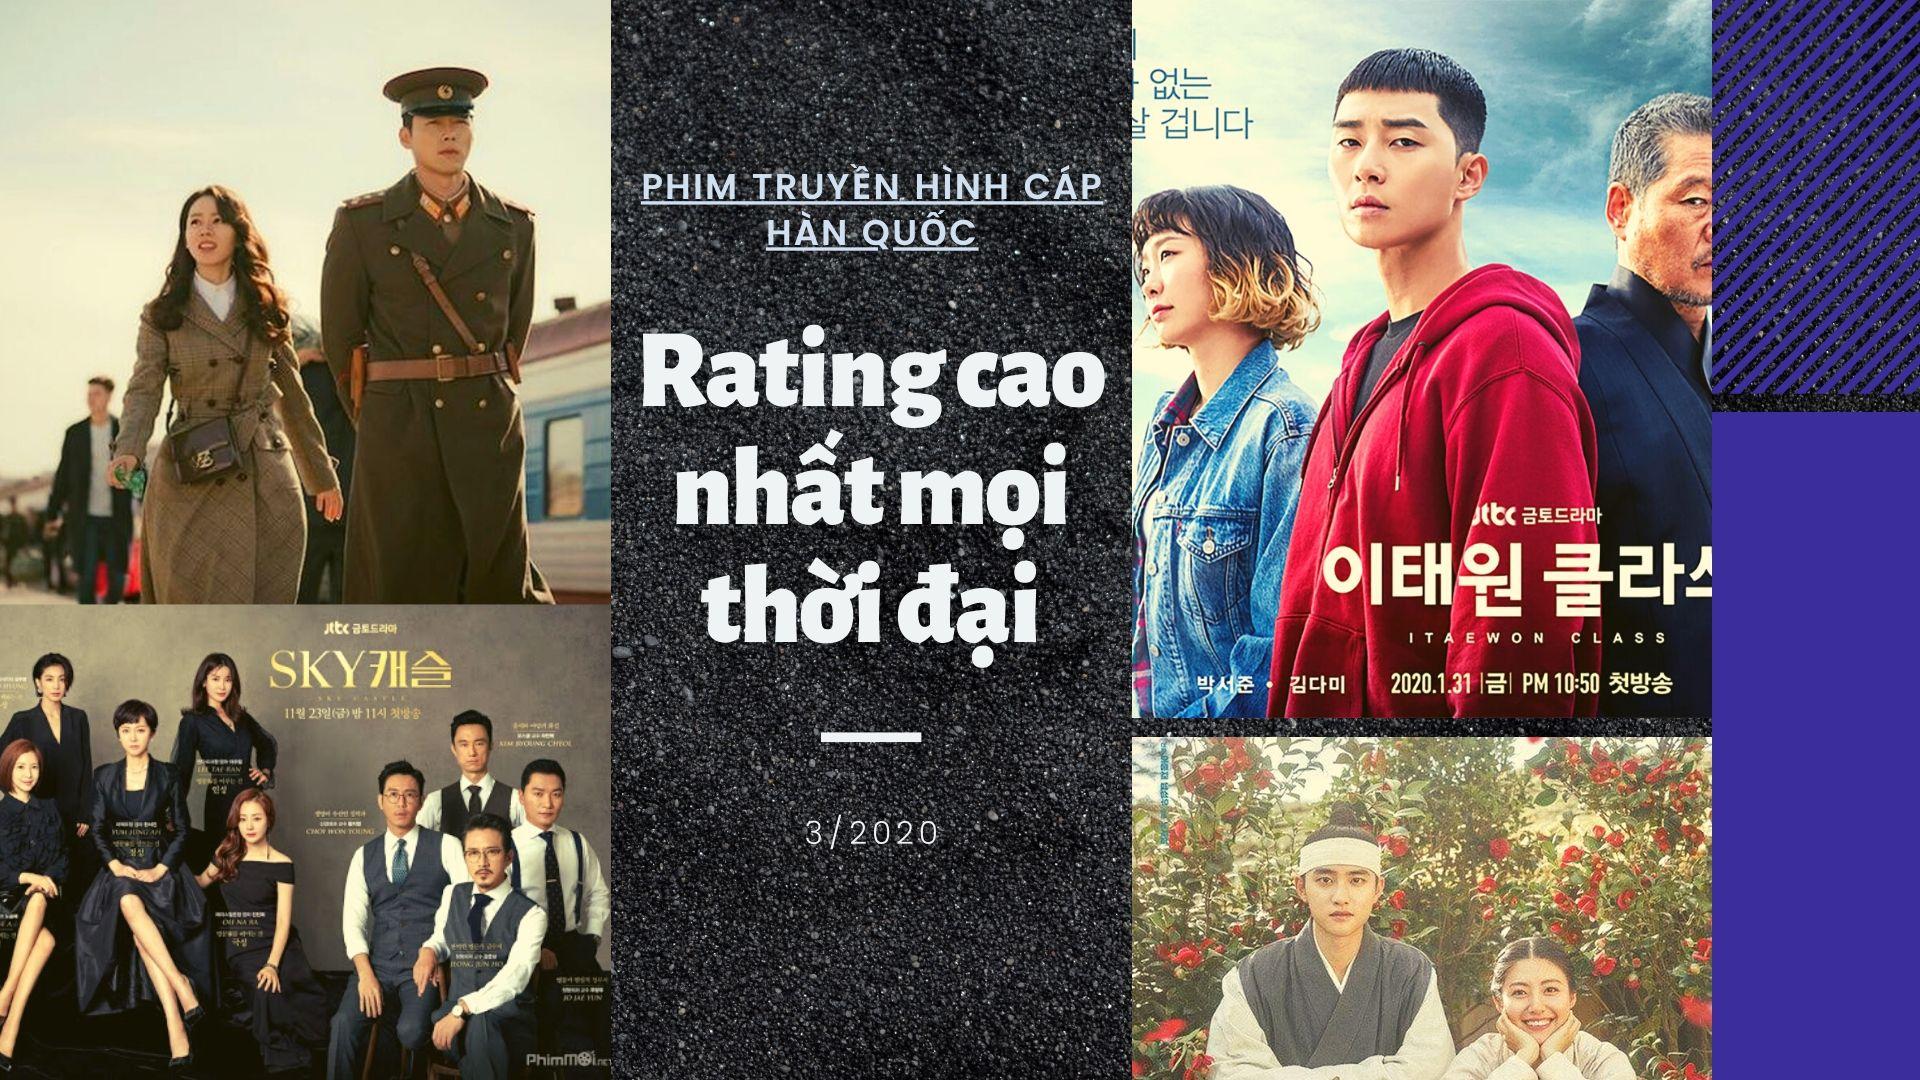 Top 7 bộ phim truyền hình cáp Hàn Quốc có rating cao nhất mọi thời đại